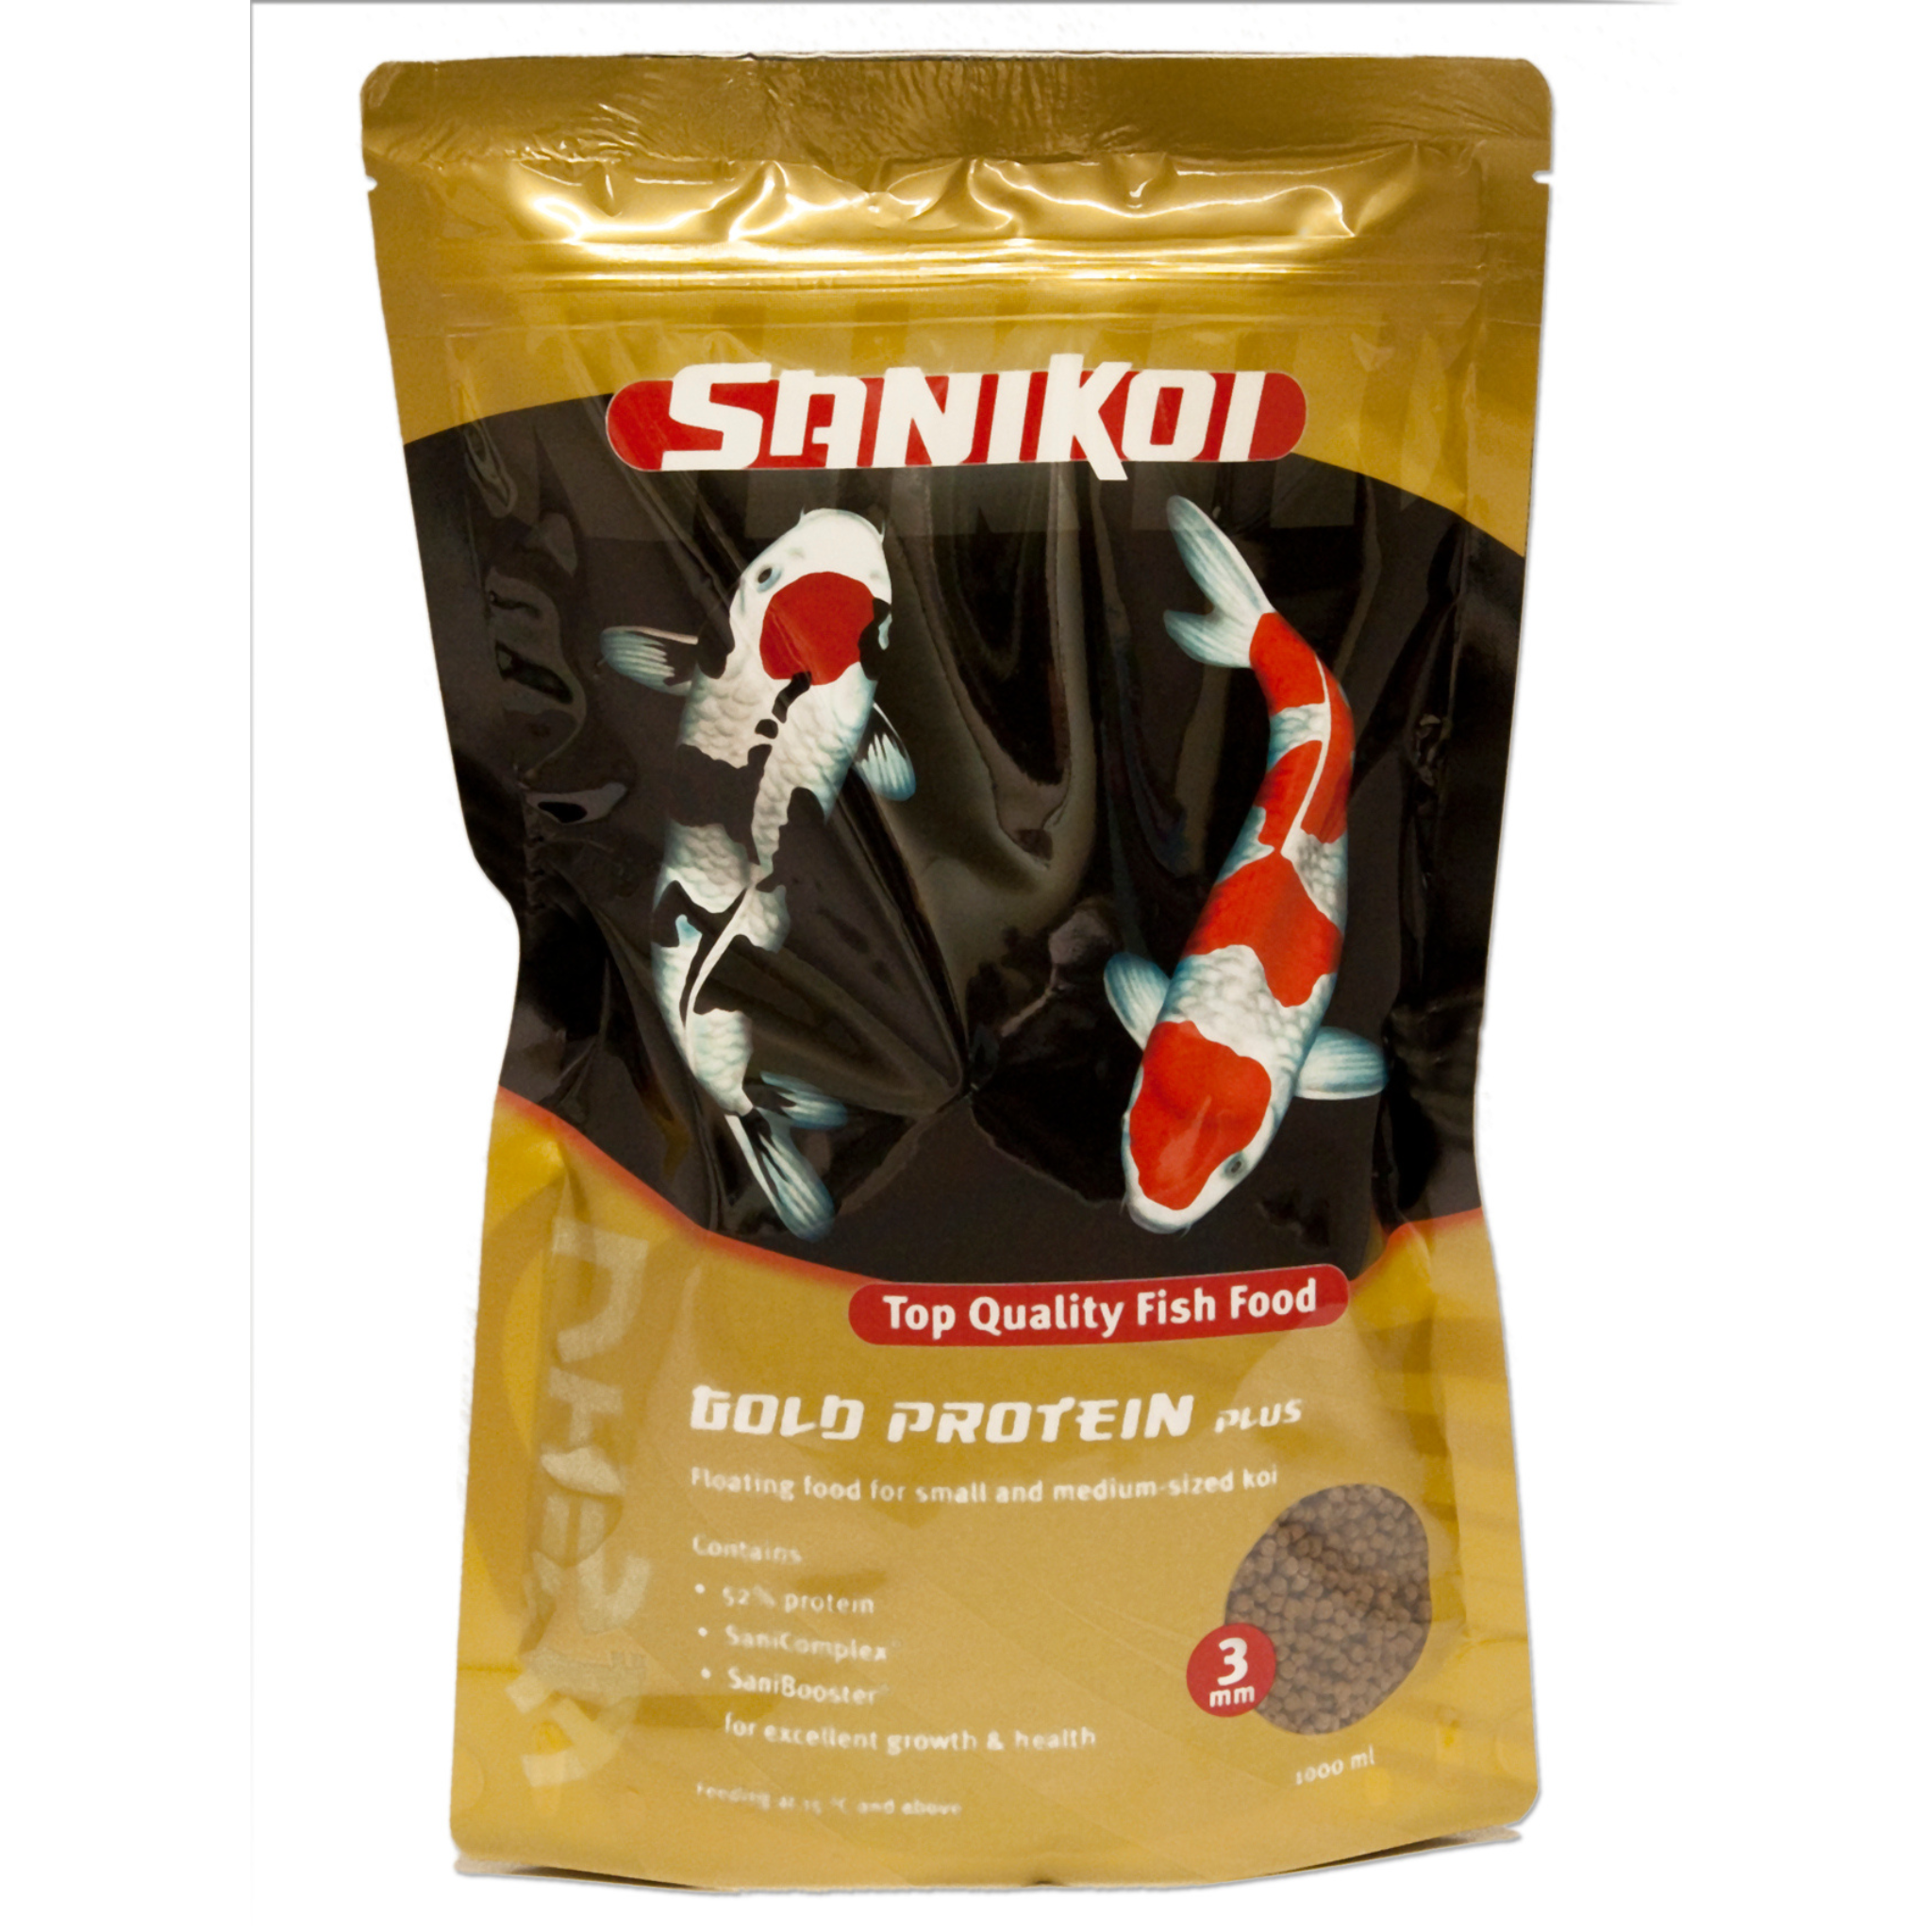 SaniKoi Gold Protein Plus 3 mm